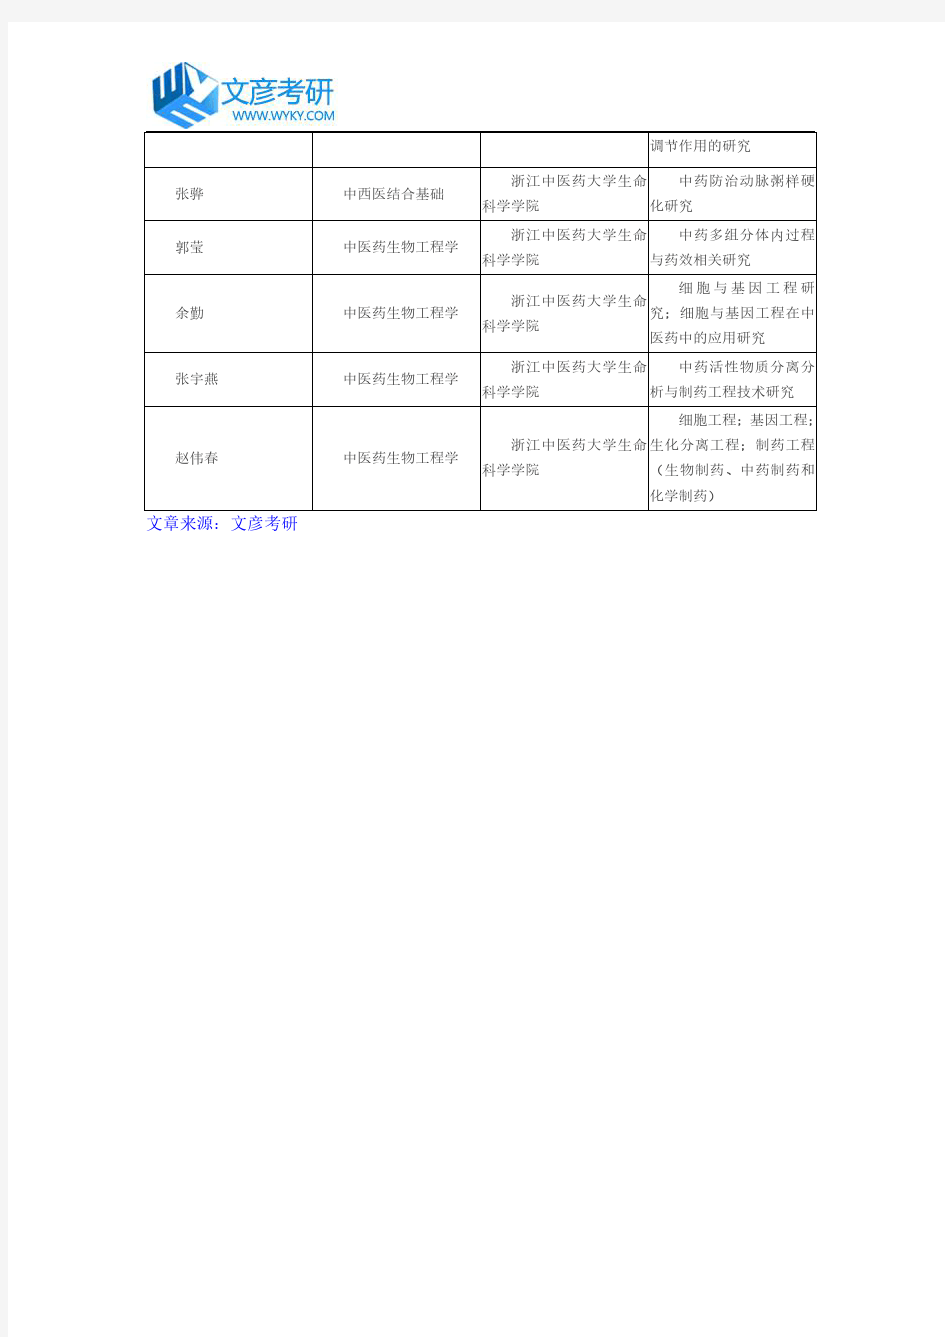 浙江中医药大学2016年生命科学学院导师名单